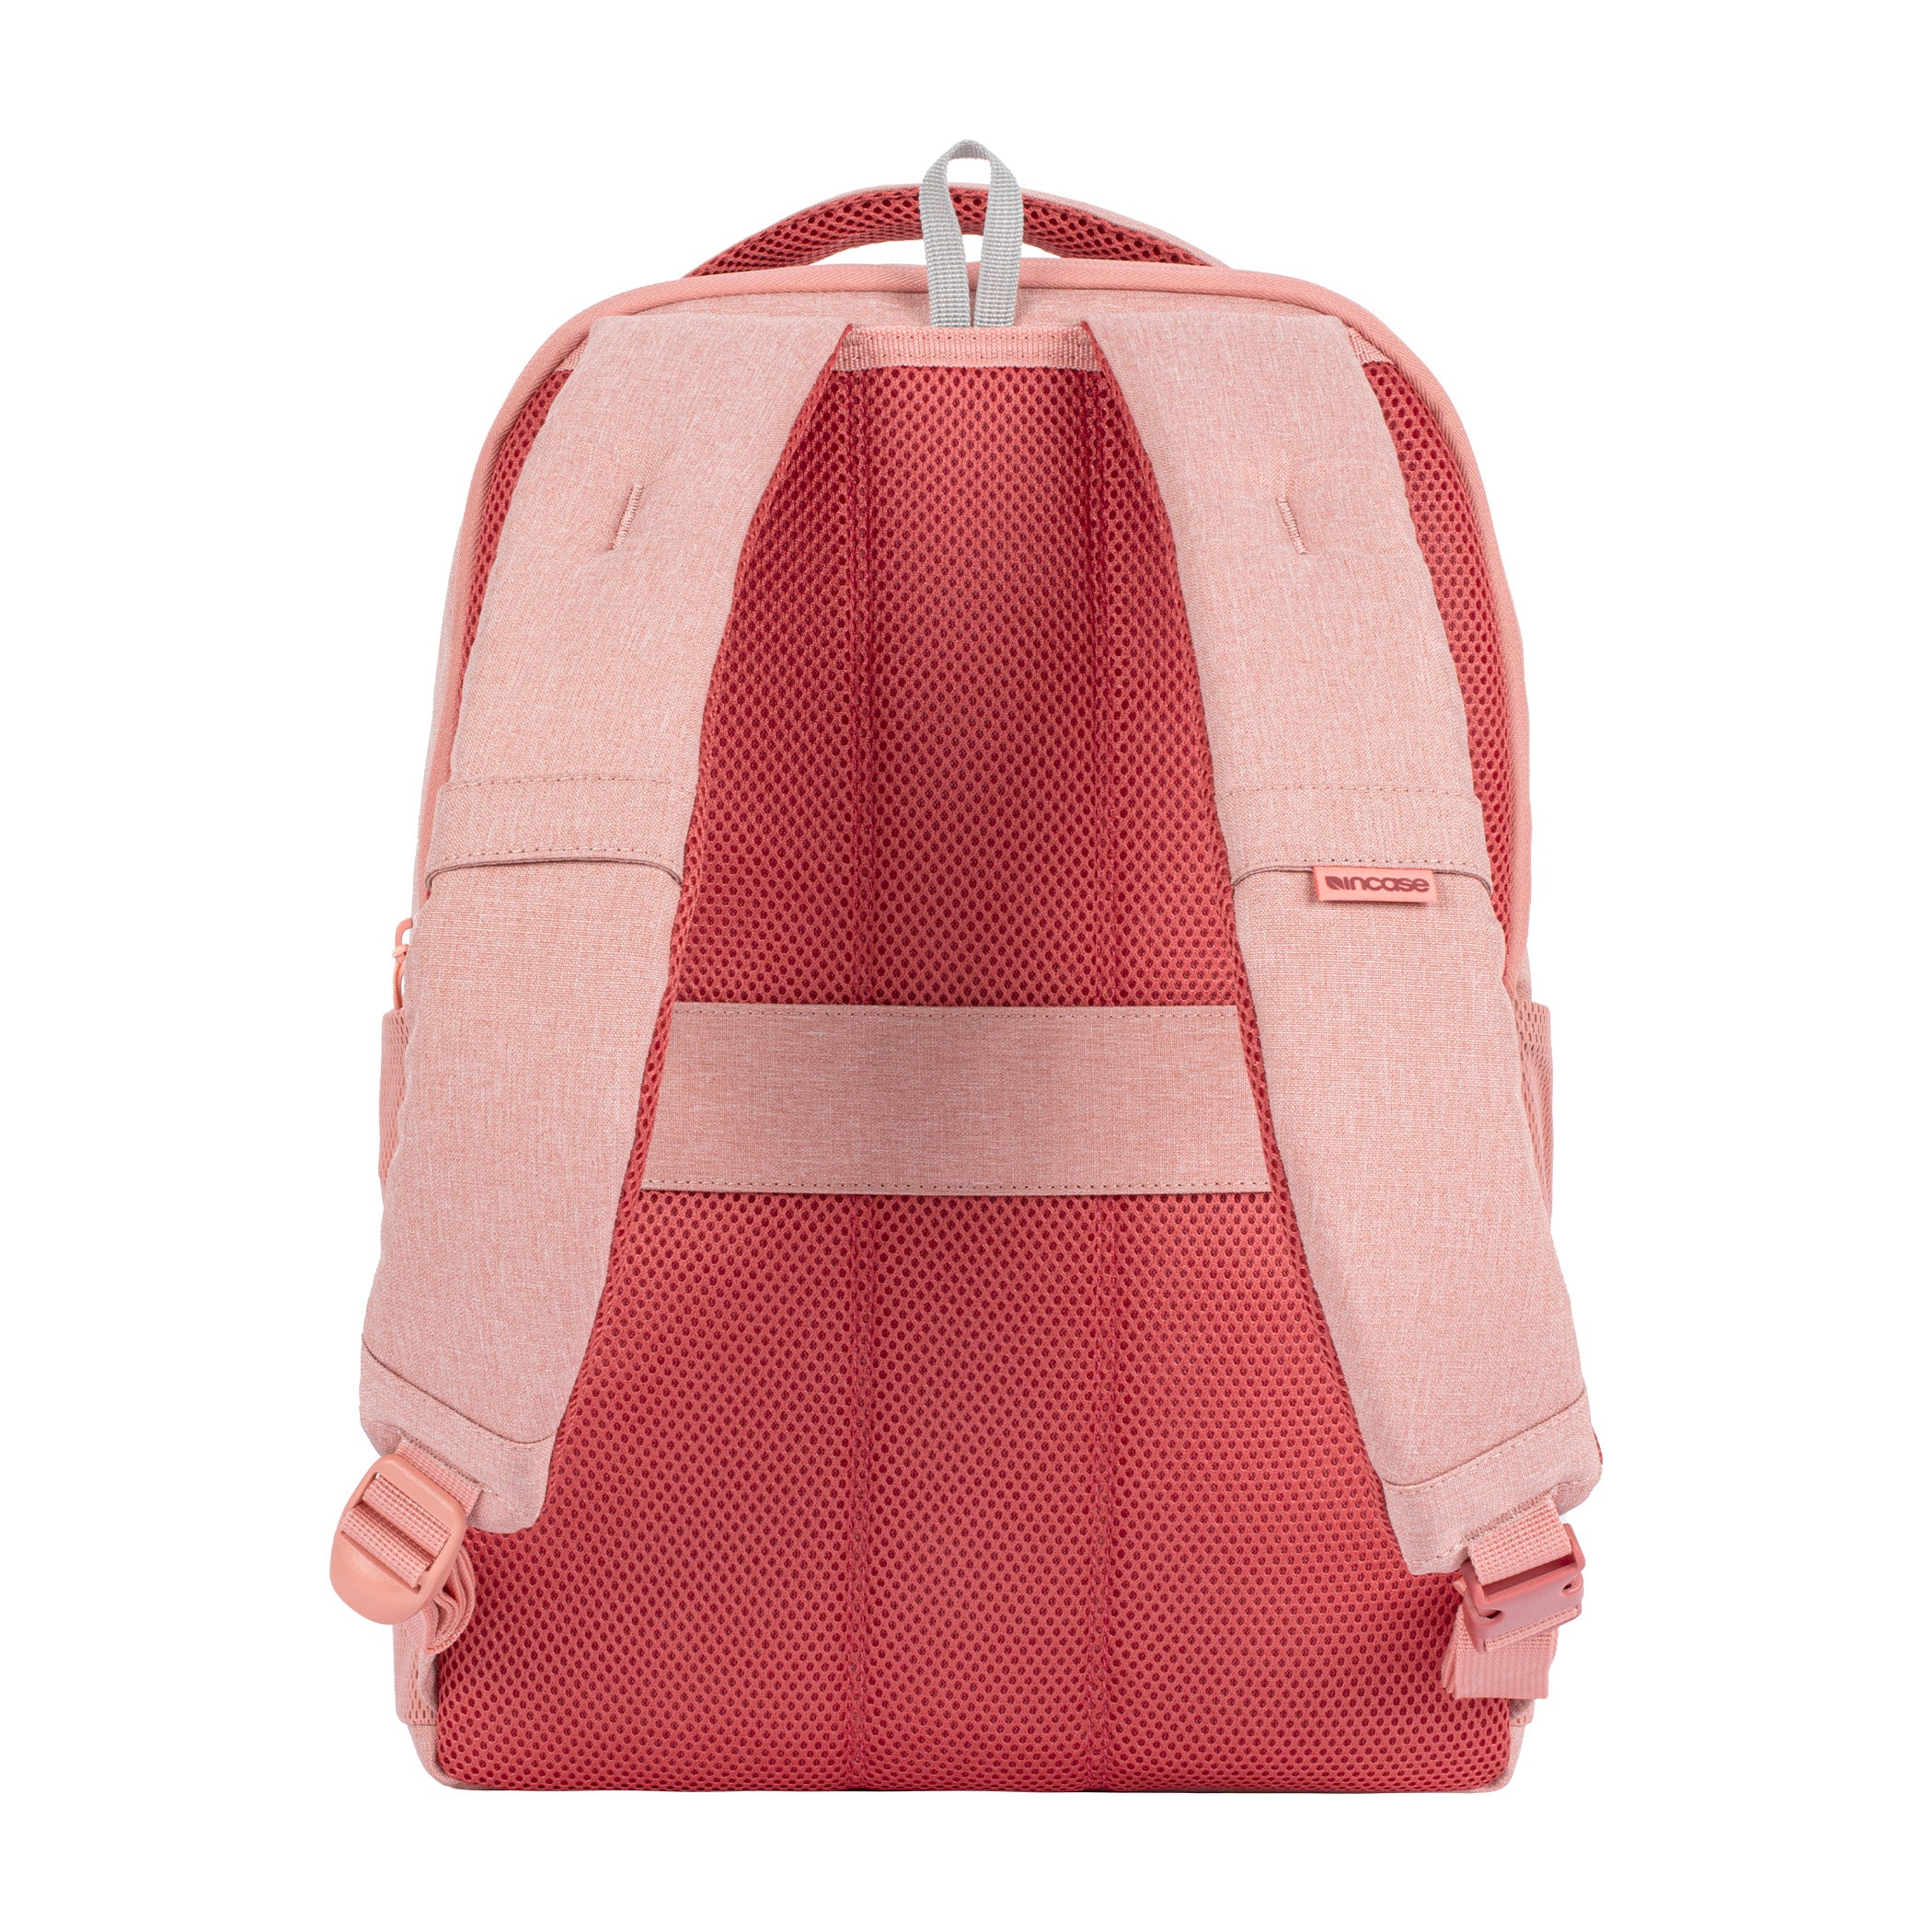 ファセット 20l バックパック(Facet 20L Backpack) - Pink(ピンク 